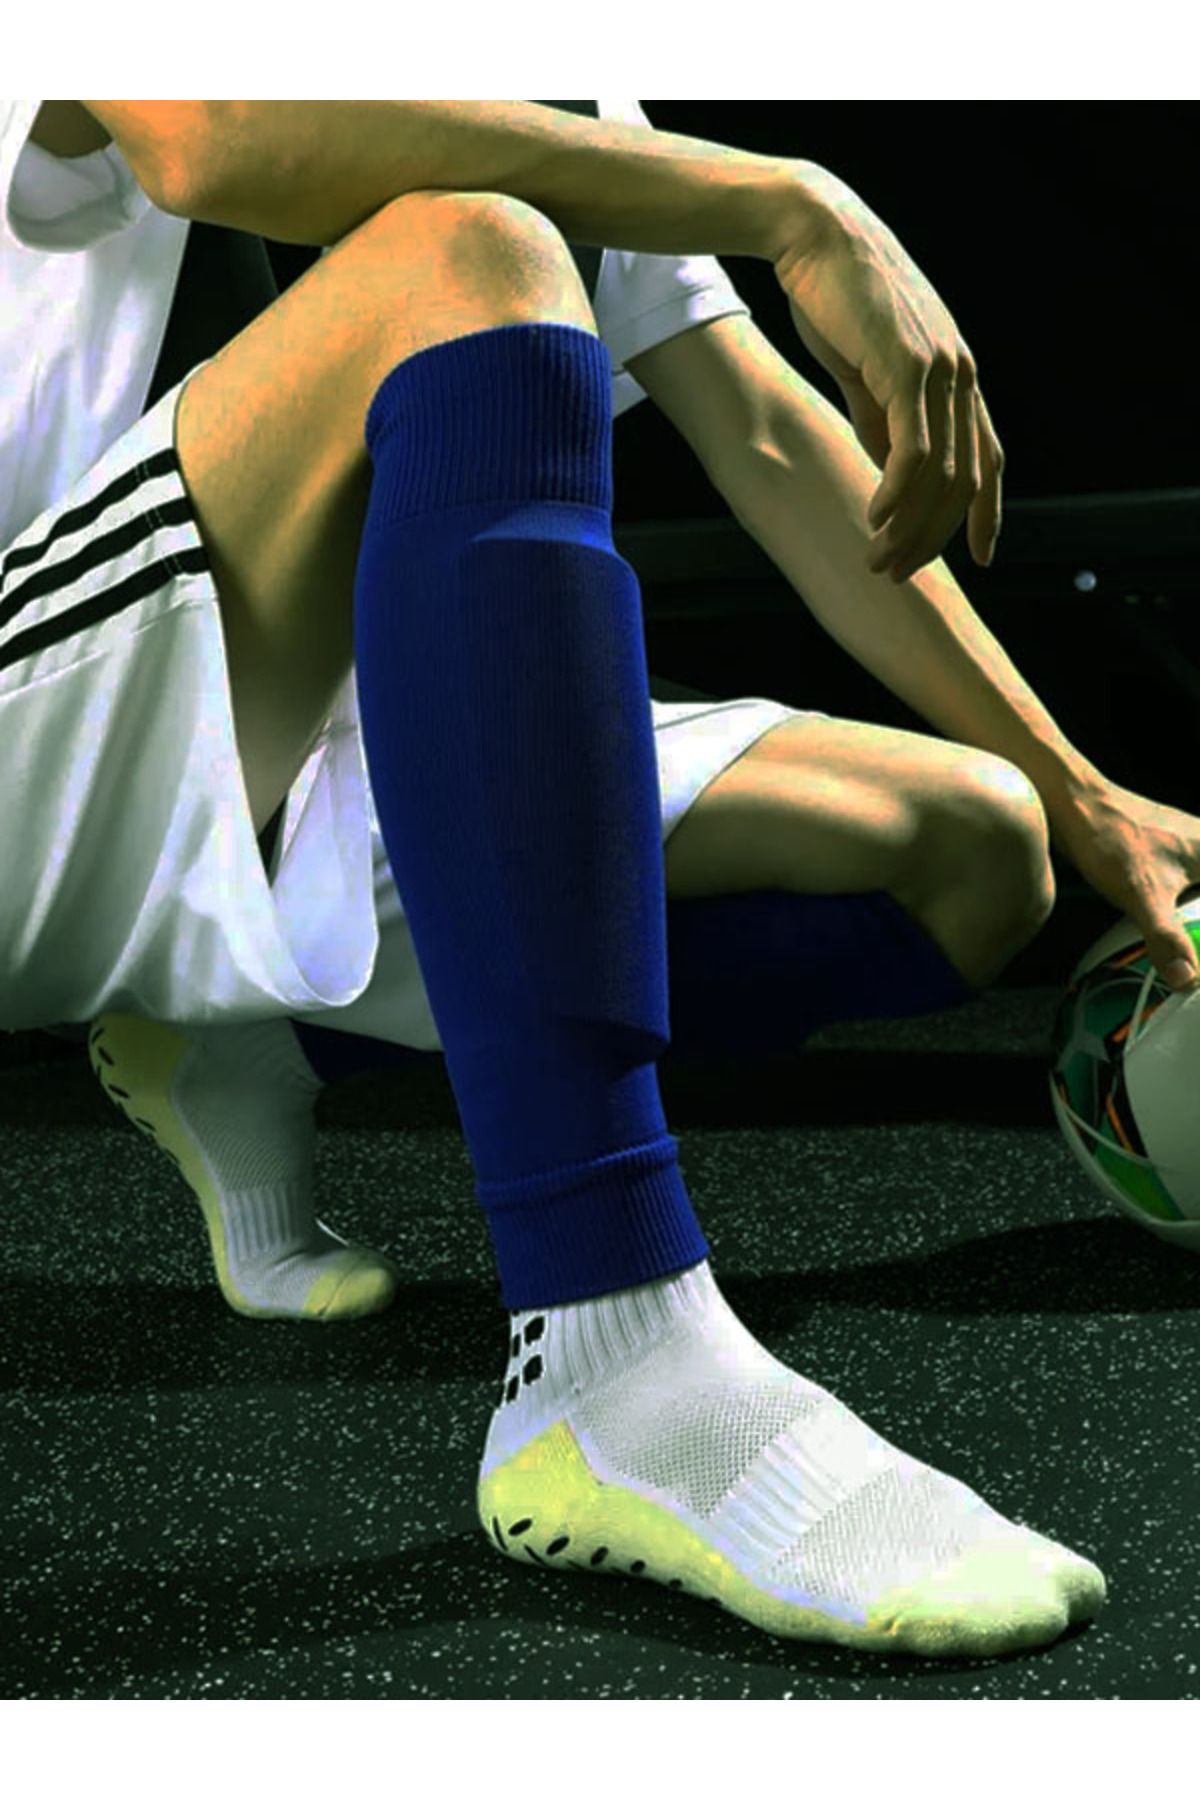 ACEYS Profesyonel Tabansız Futbol Çorabı Tozluk Topuksuz Konç Maç Çorap Forma Tozluğu